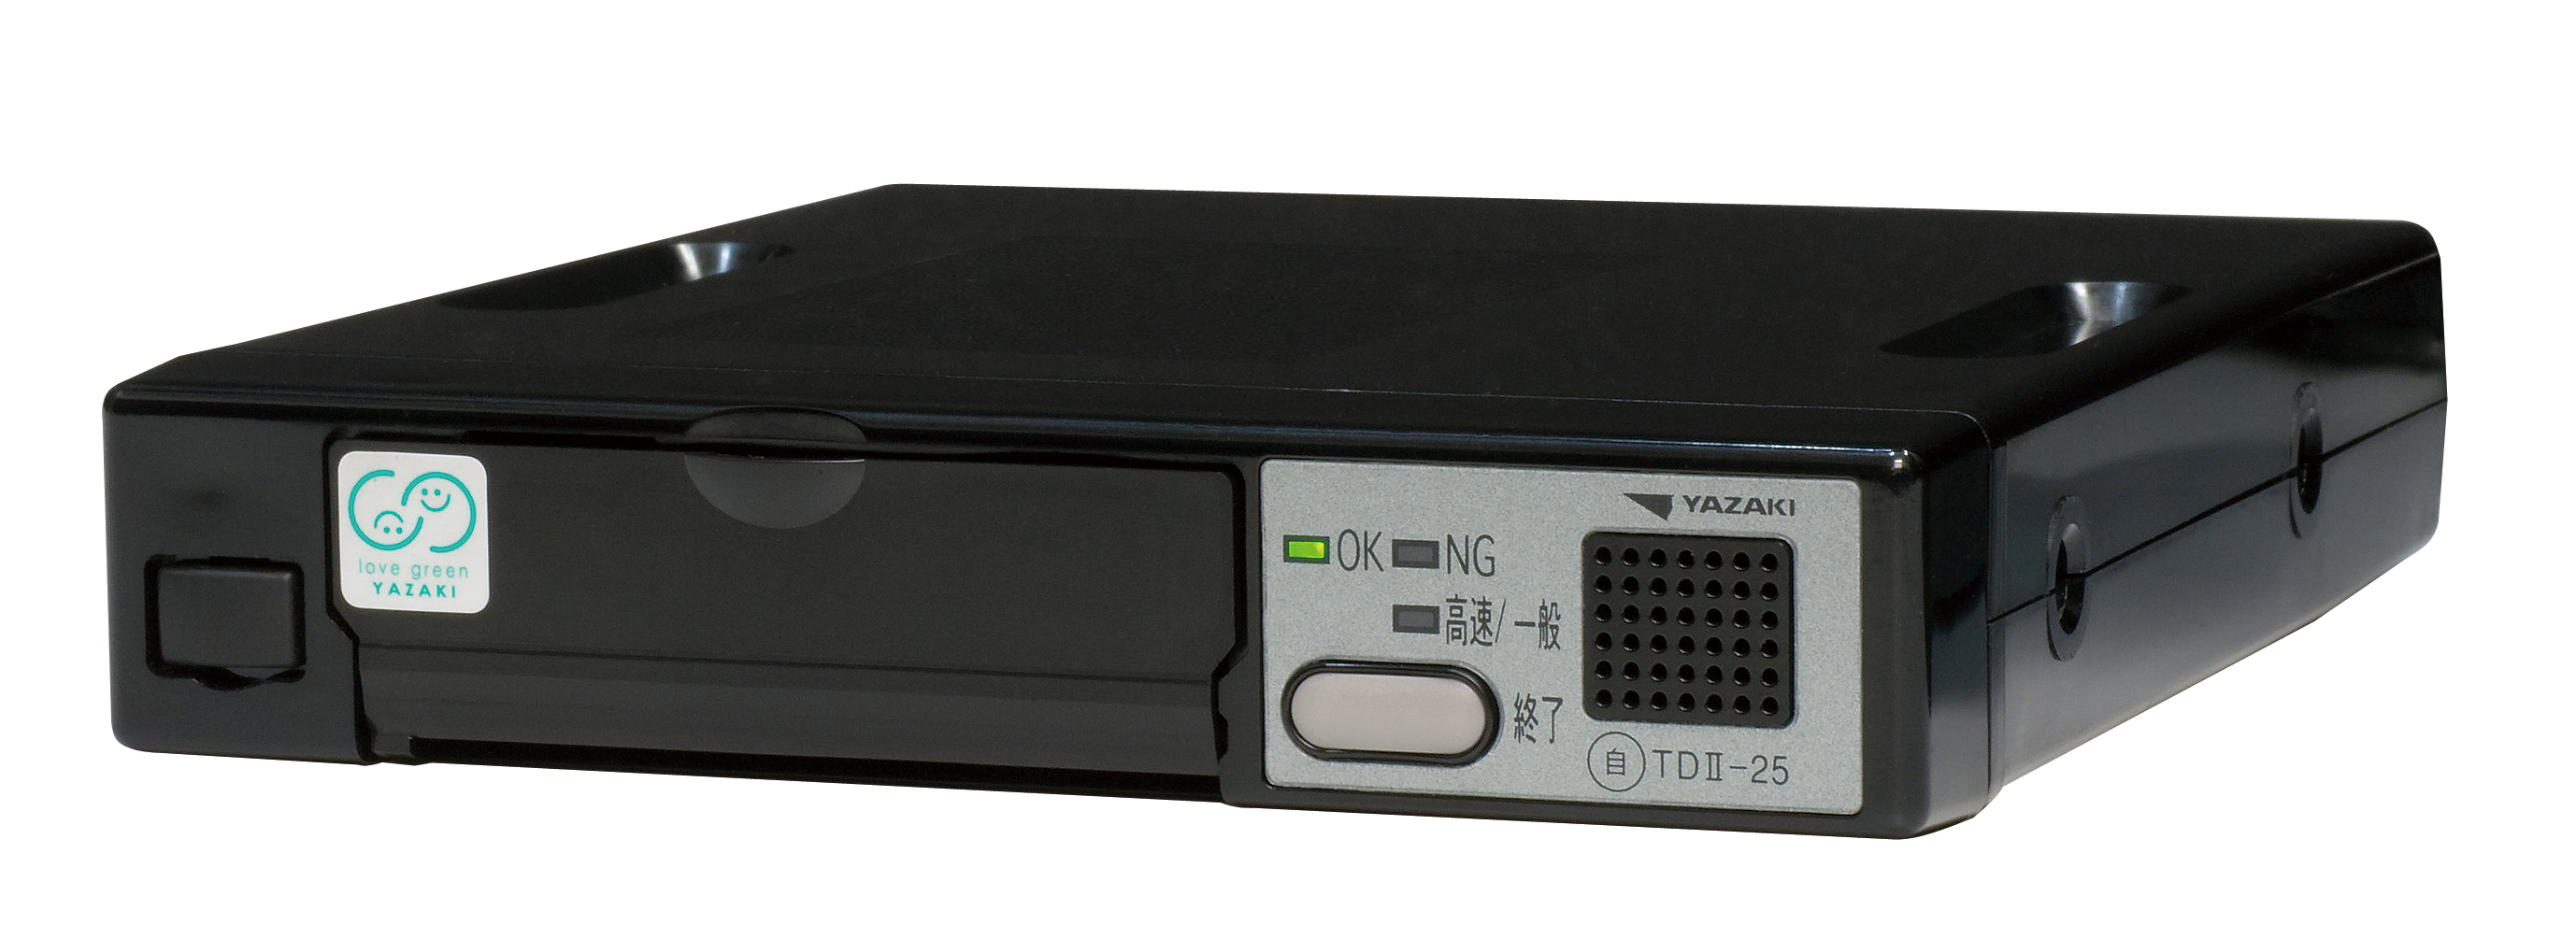 デジタルタコグラフ＆ドライブレコーダー一体型製品「YAZAC-eye3T」